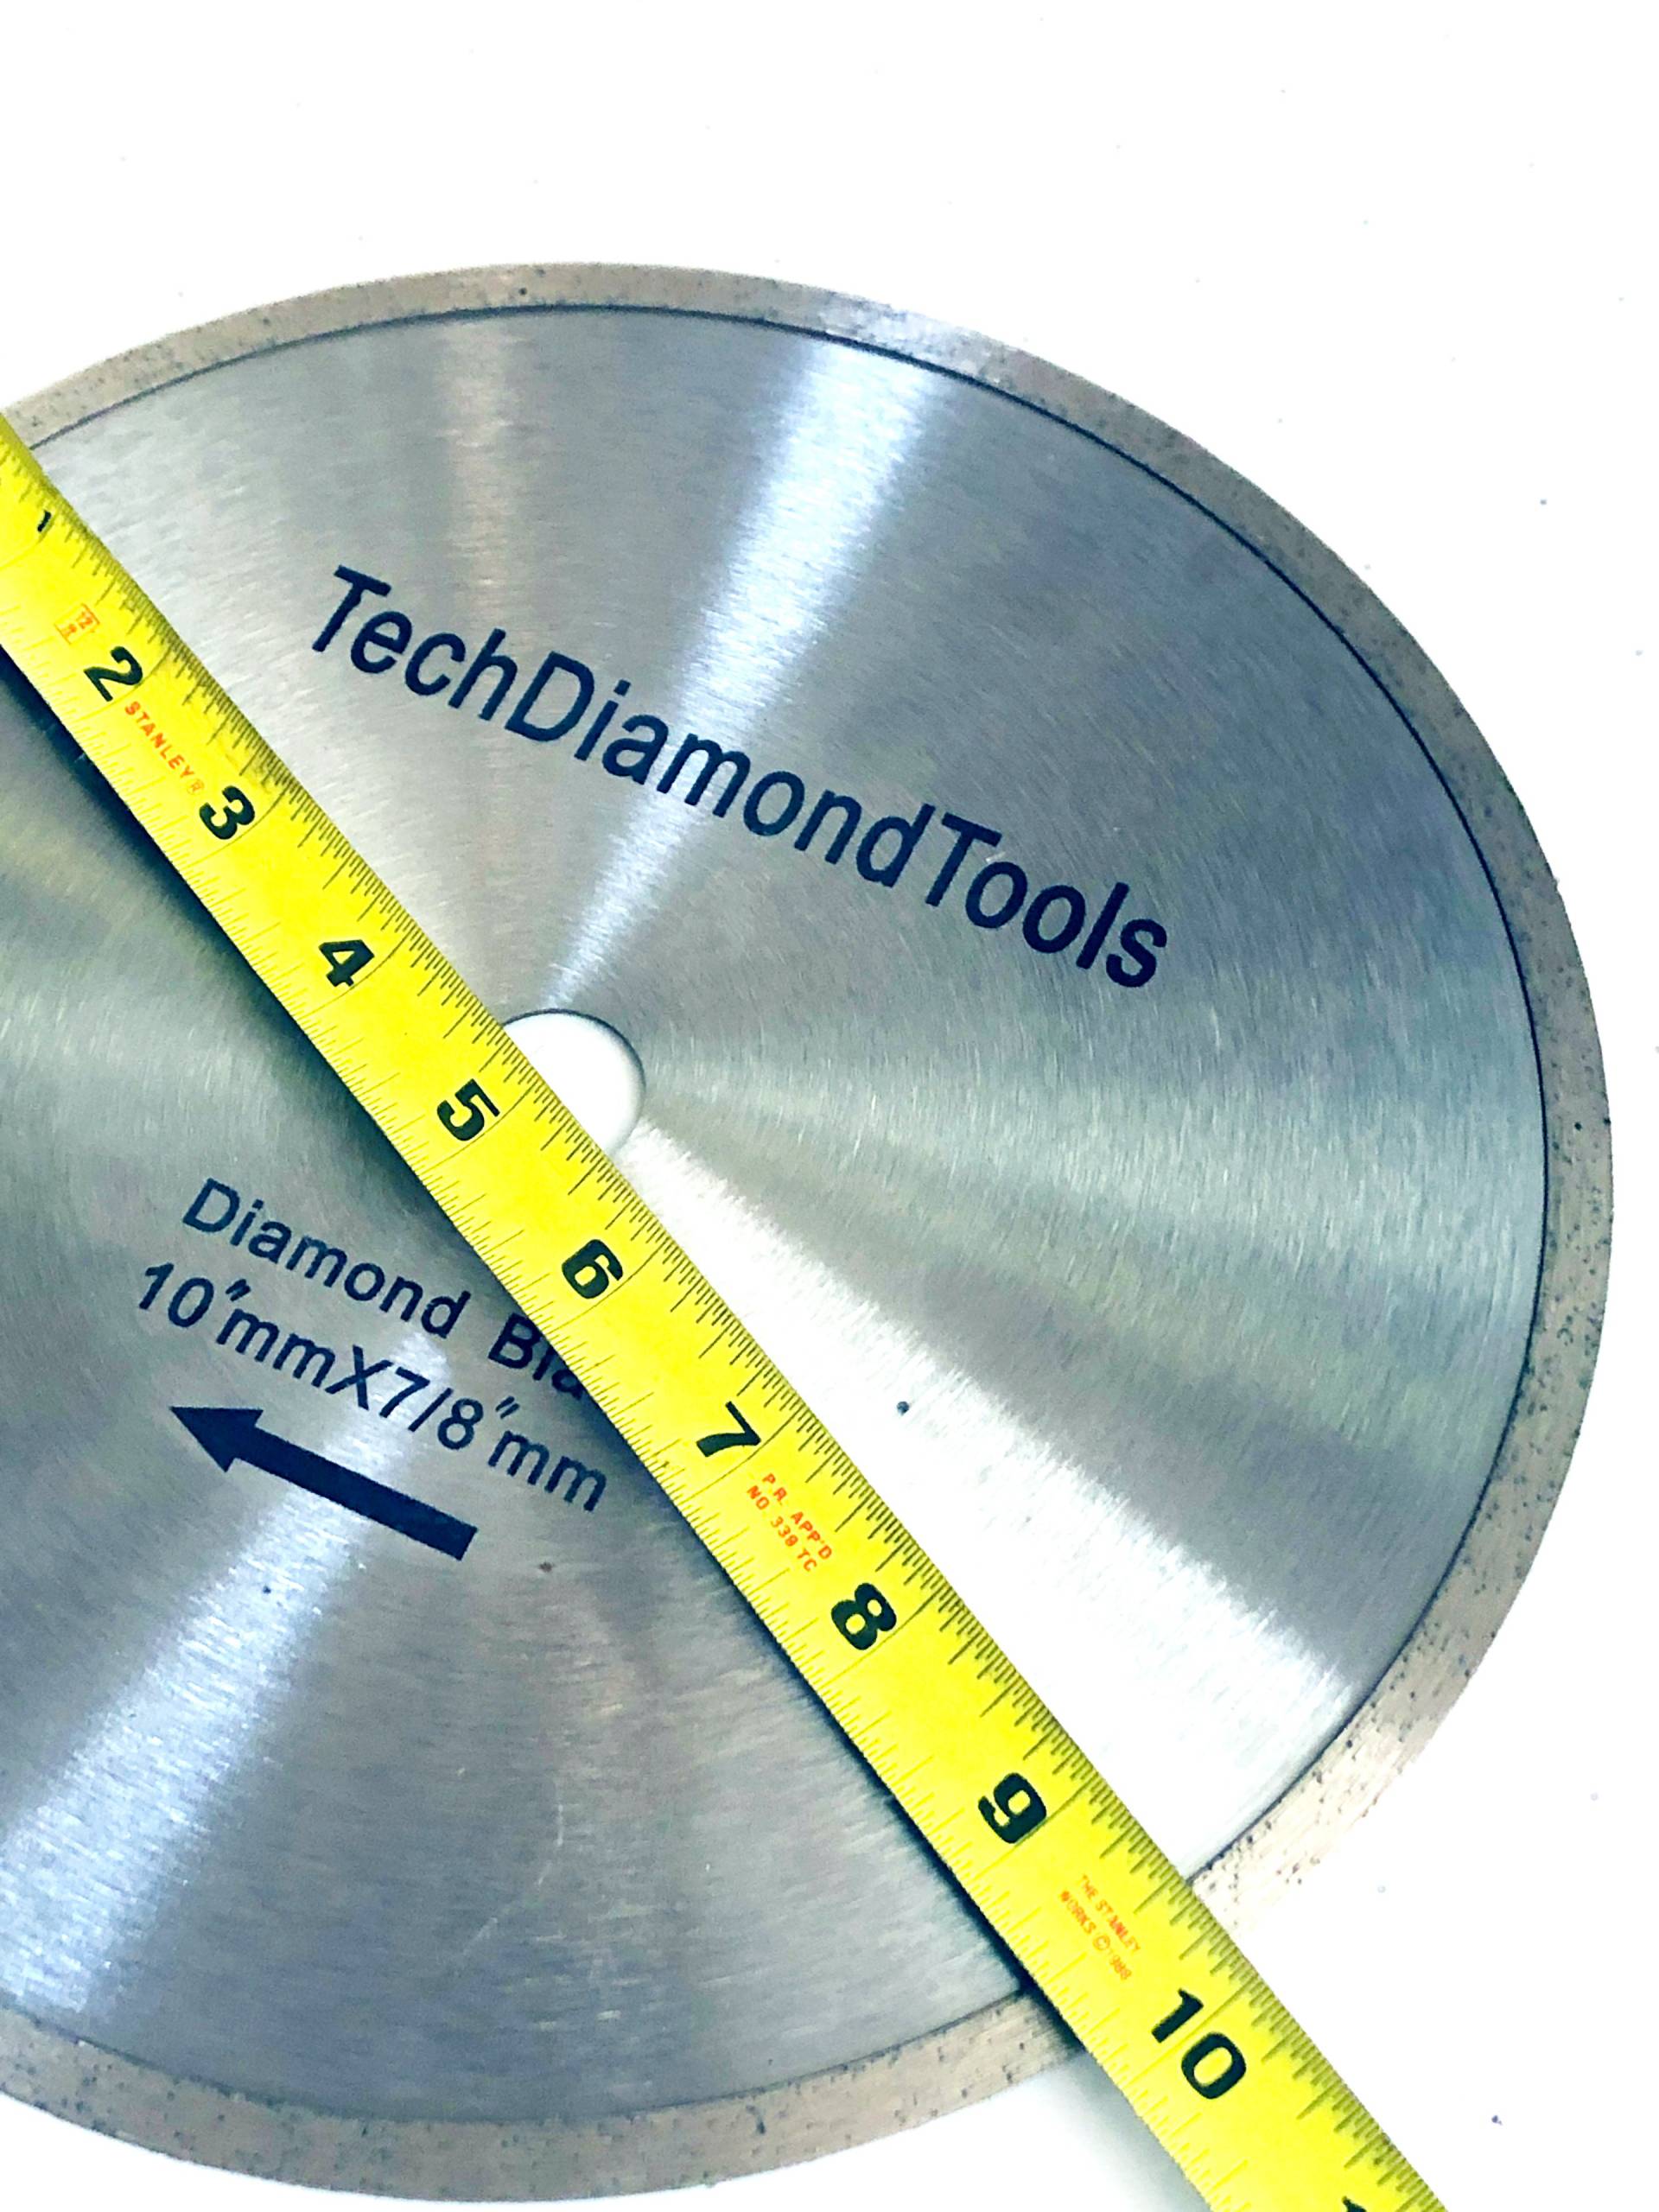 Continuous Diamond Saw Blade Tech Diamond Tools